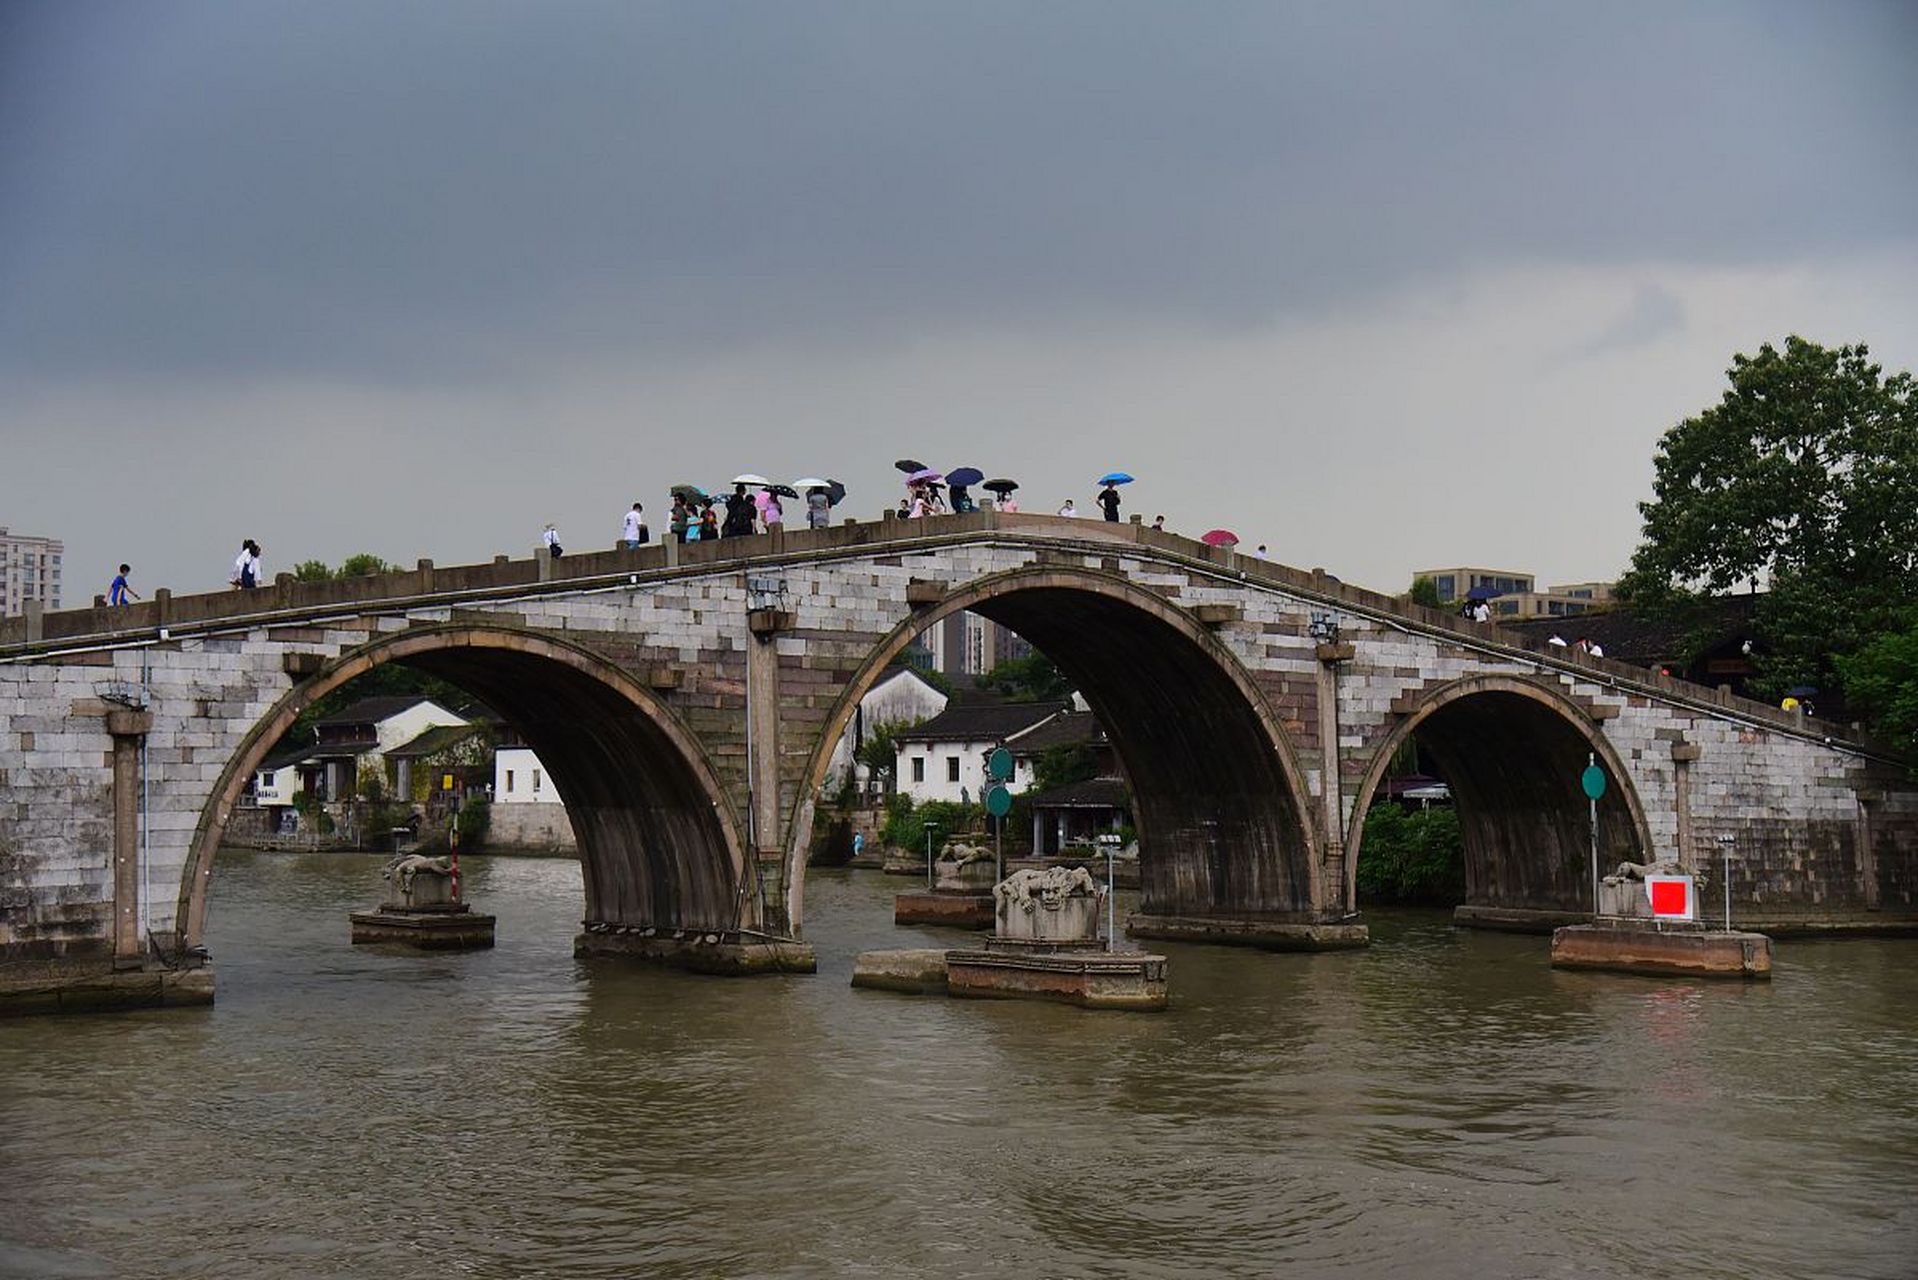 苏州木渎永安桥游记  上周末,我去了苏州木渎的永安桥